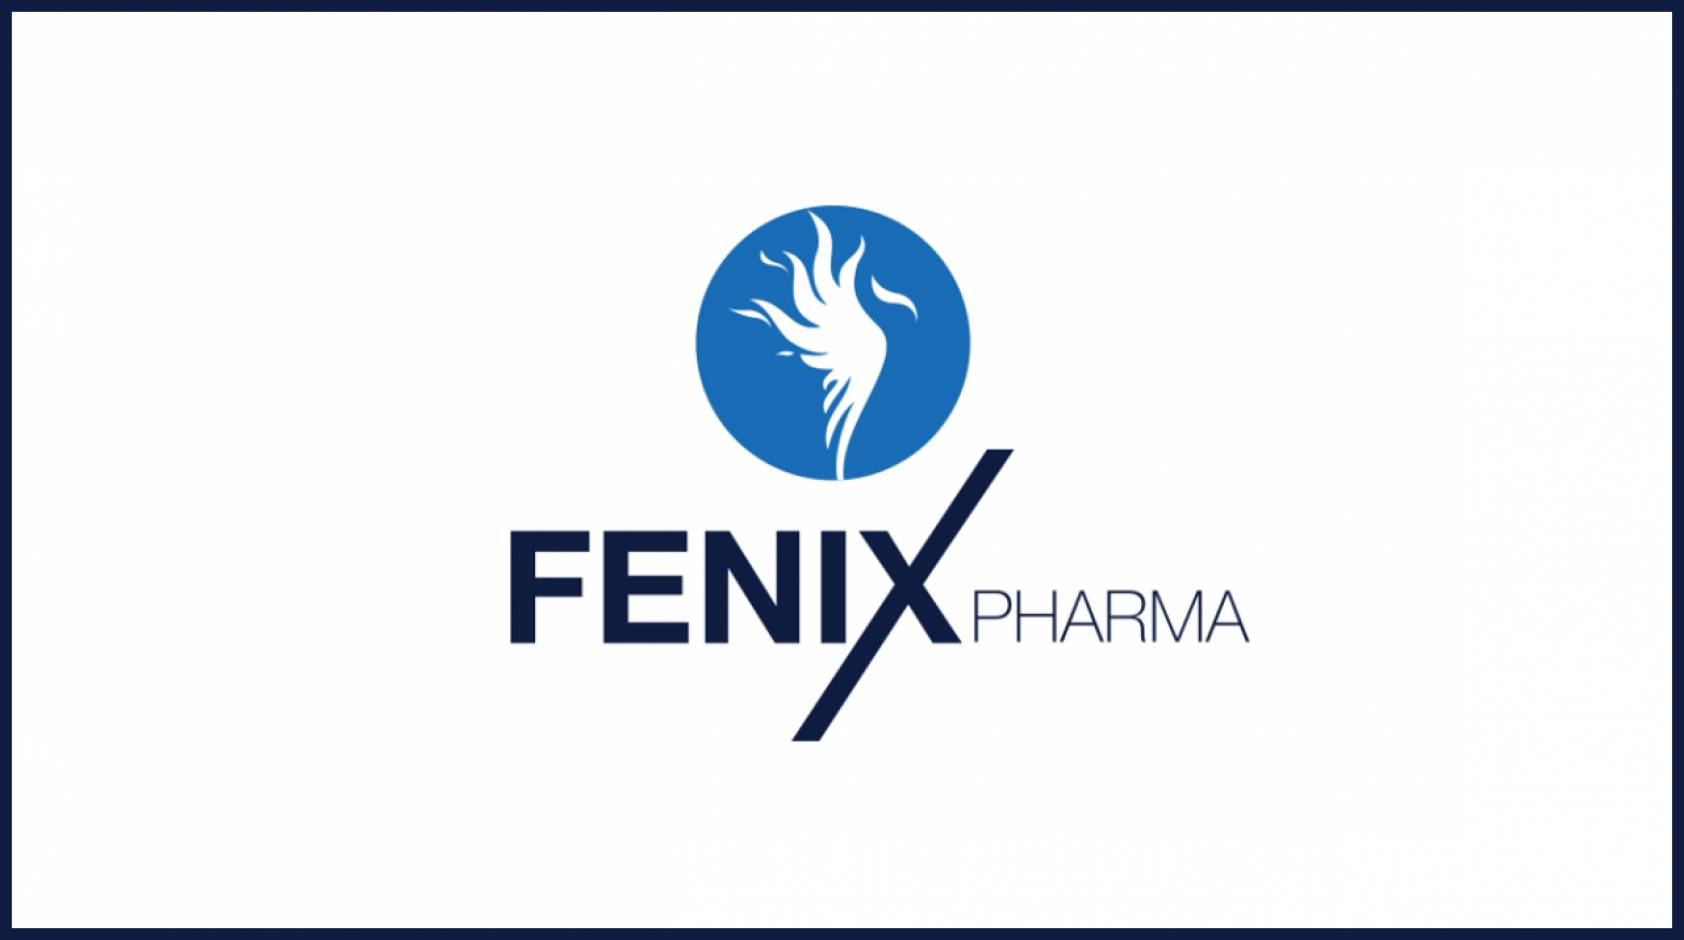 Fenix Pharma entra nell’area oncologica tramite l’acquisizione di Wave Pharma